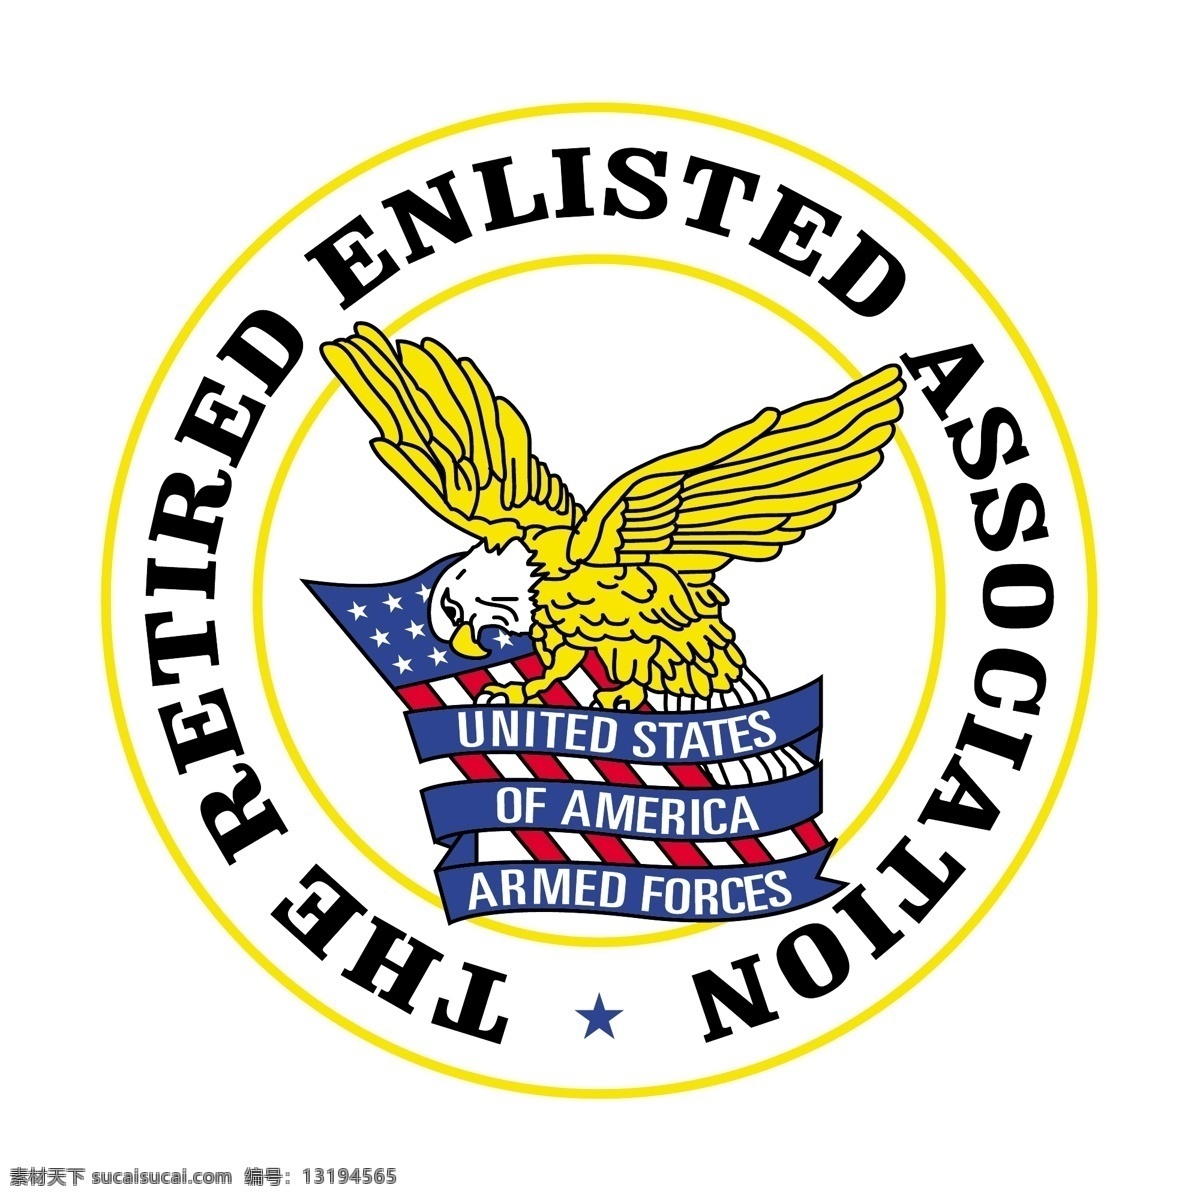 退役 士兵 协会 免费 退休 招募 标志 psd源文件 logo设计